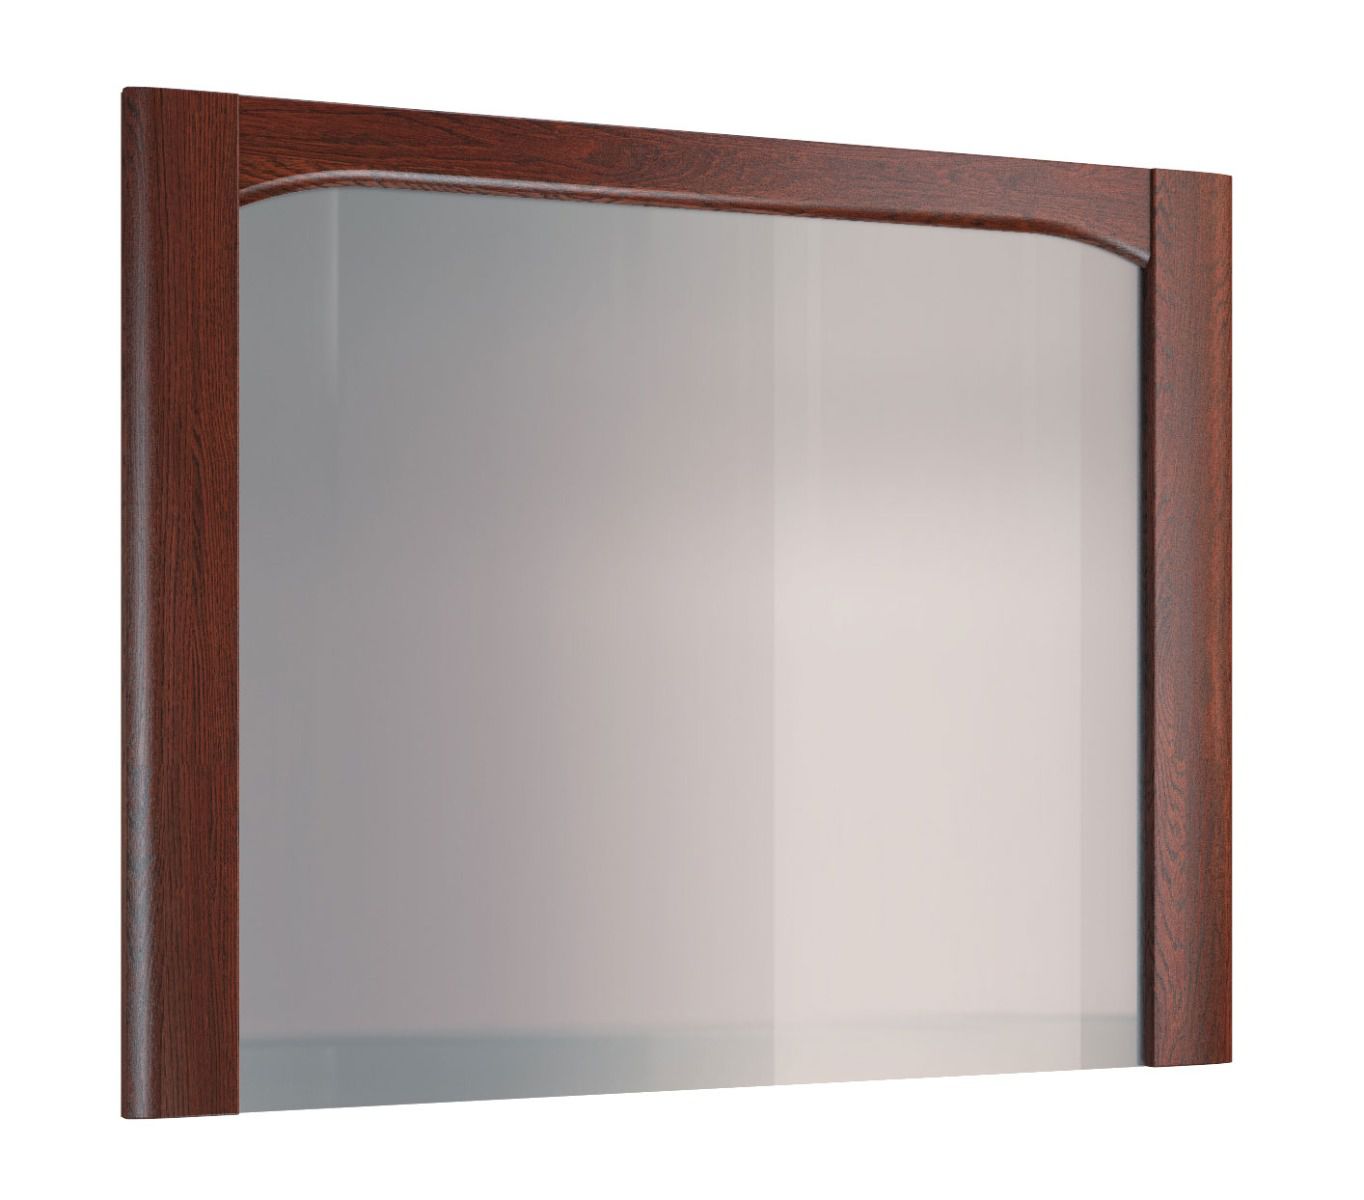 Grand miroir avec cadre en bois Krasno 19, Chêne massif, Dimensions : 90 x 115 x 4 cm, Finition de qualité, Style intemporel